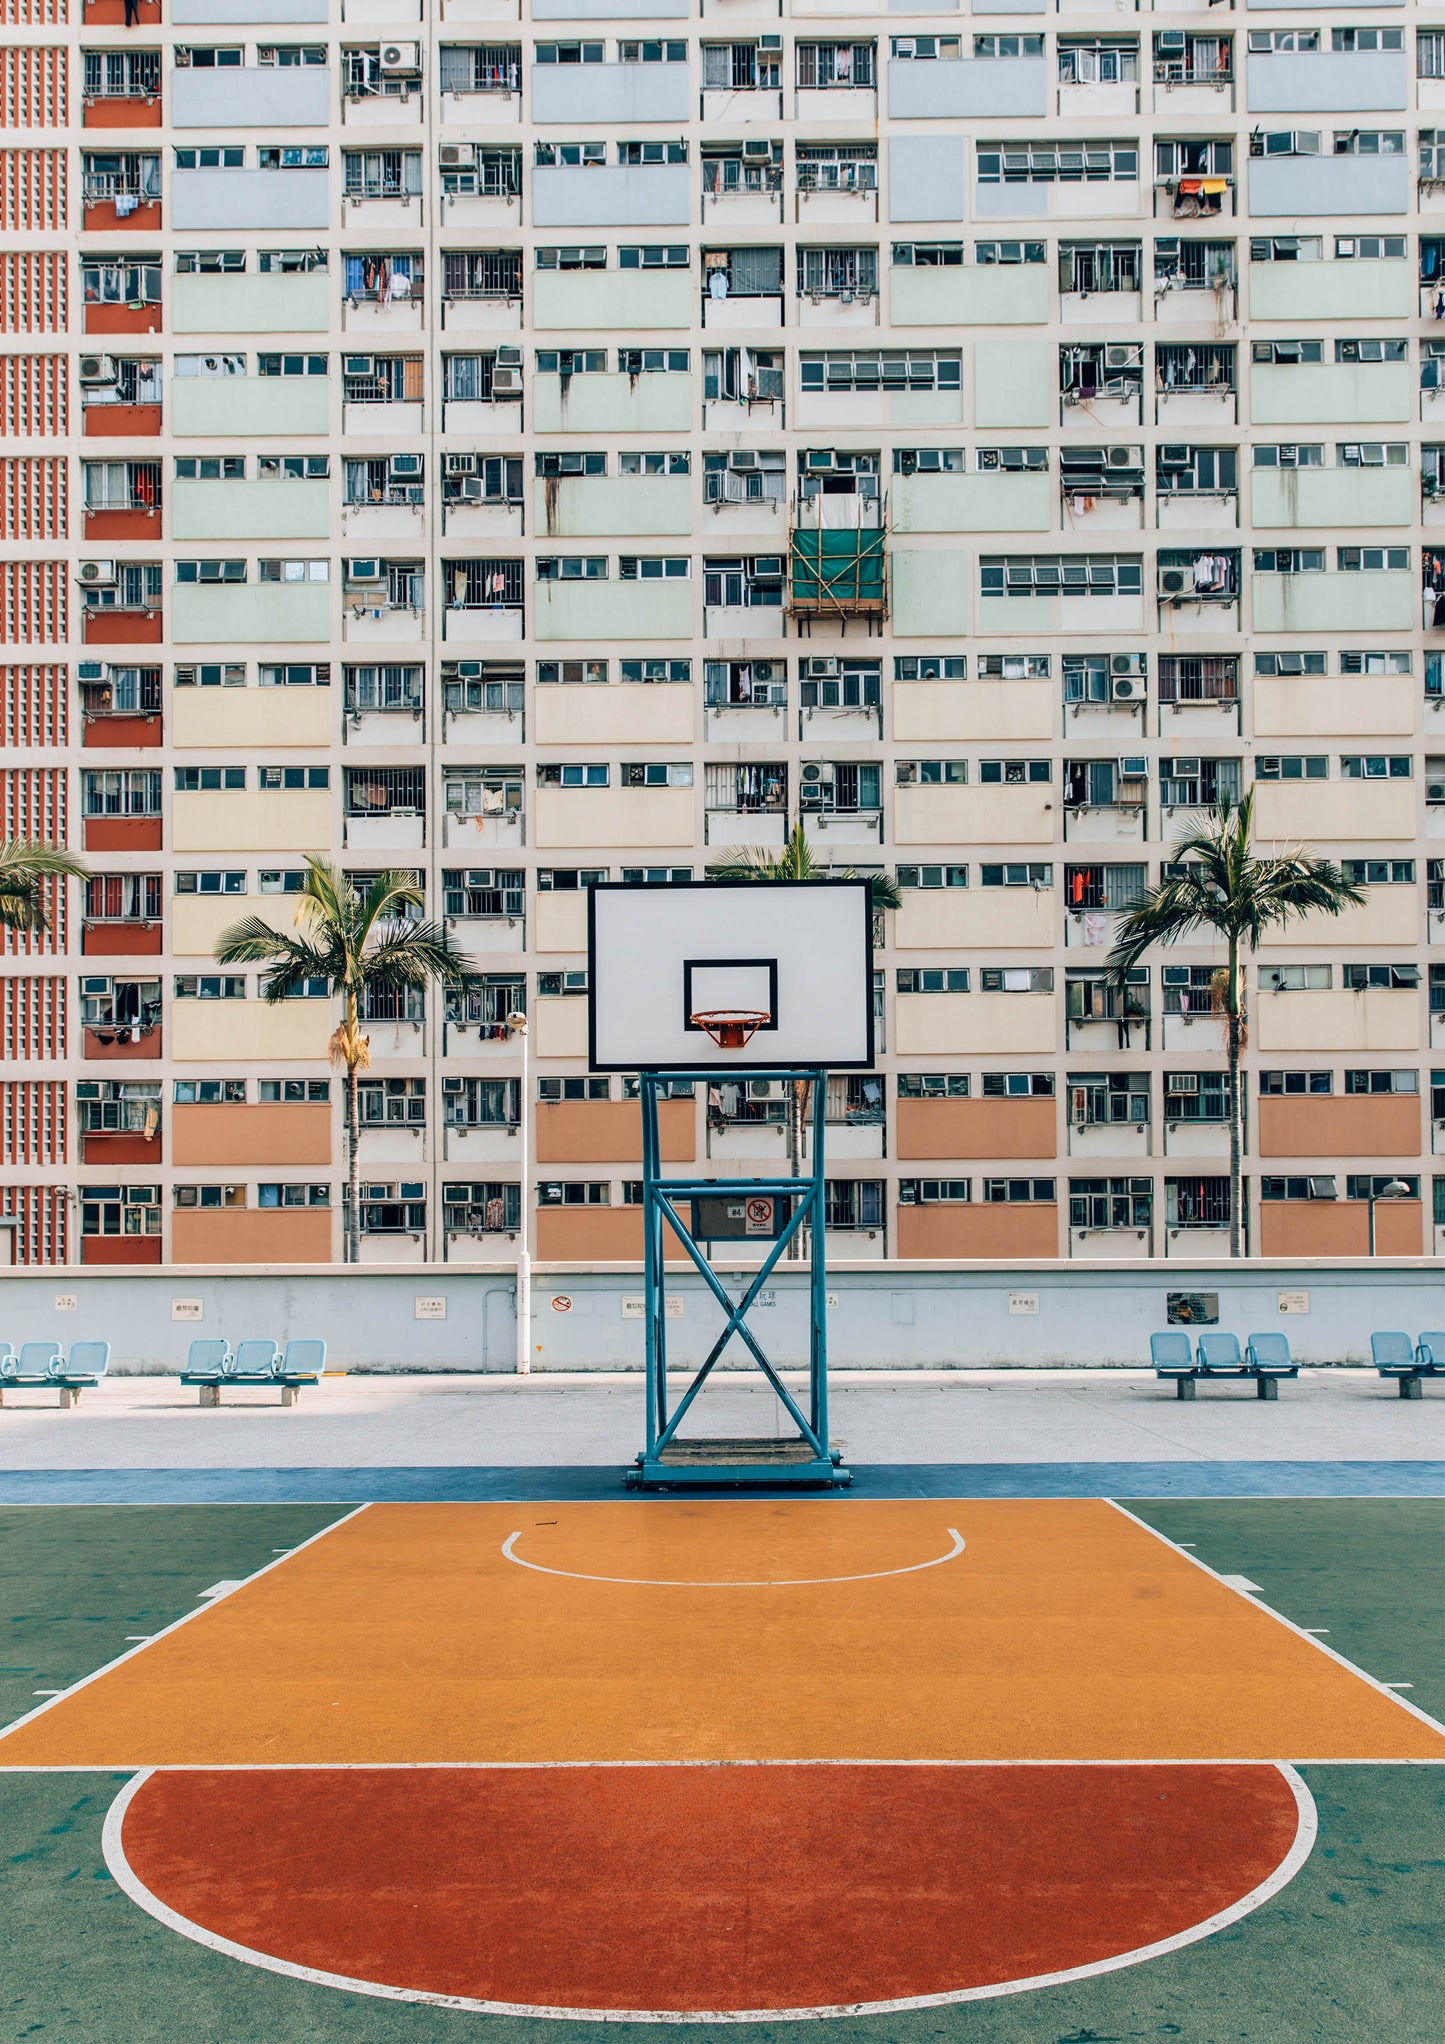 Basketball Courts at Choi Hung Estate, Hong Kong